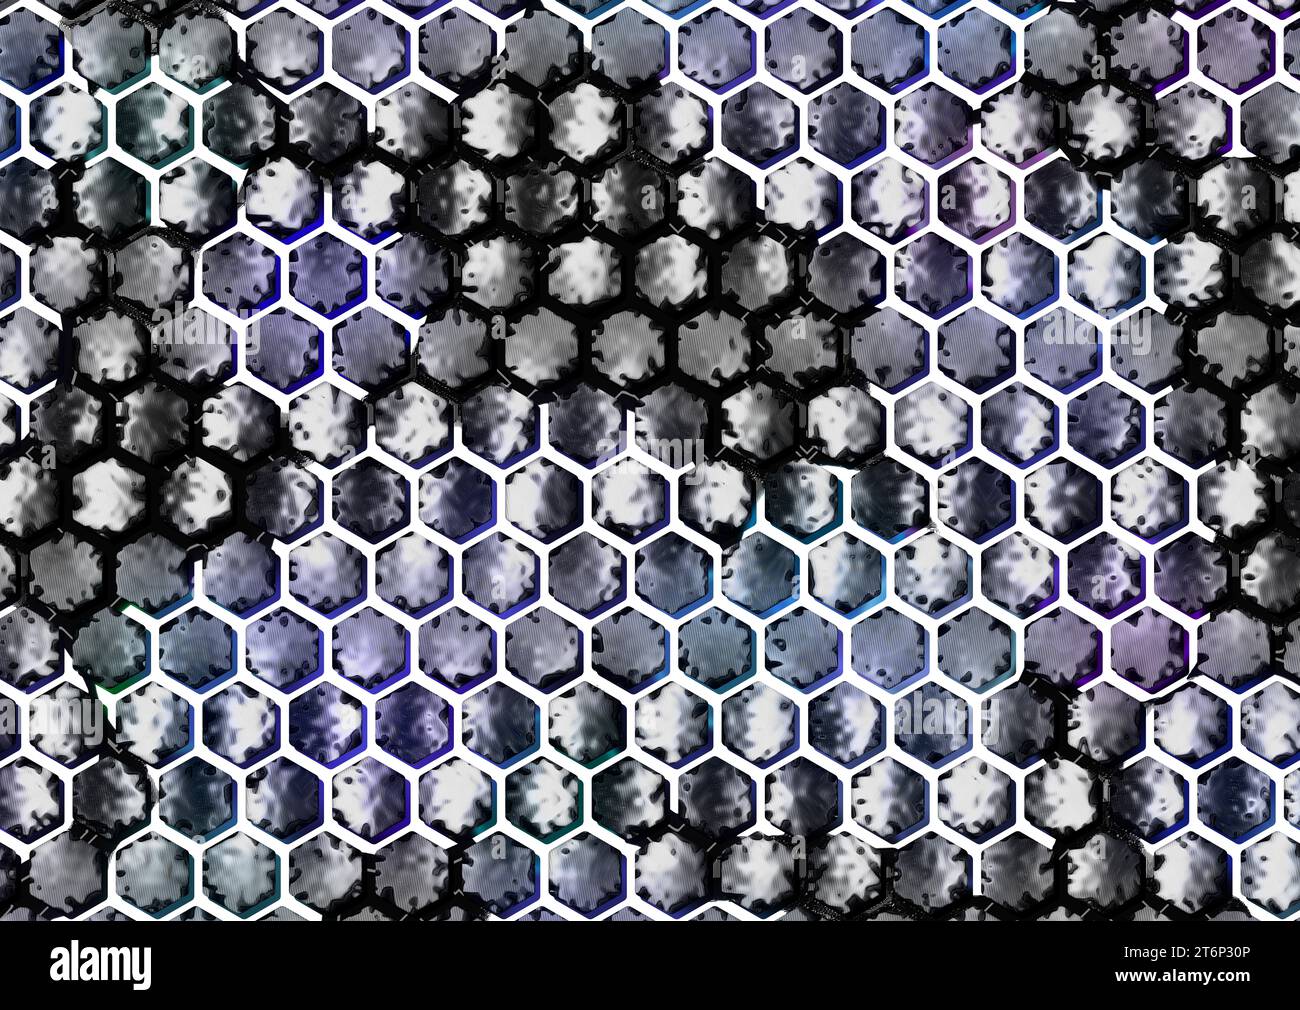 Un design abstrait frappant avec un motif hexagonal avec des divisions blanches et des cellules de couleur froide, le tout posé sur une surface sombre avec un liquide rencontré Banque D'Images